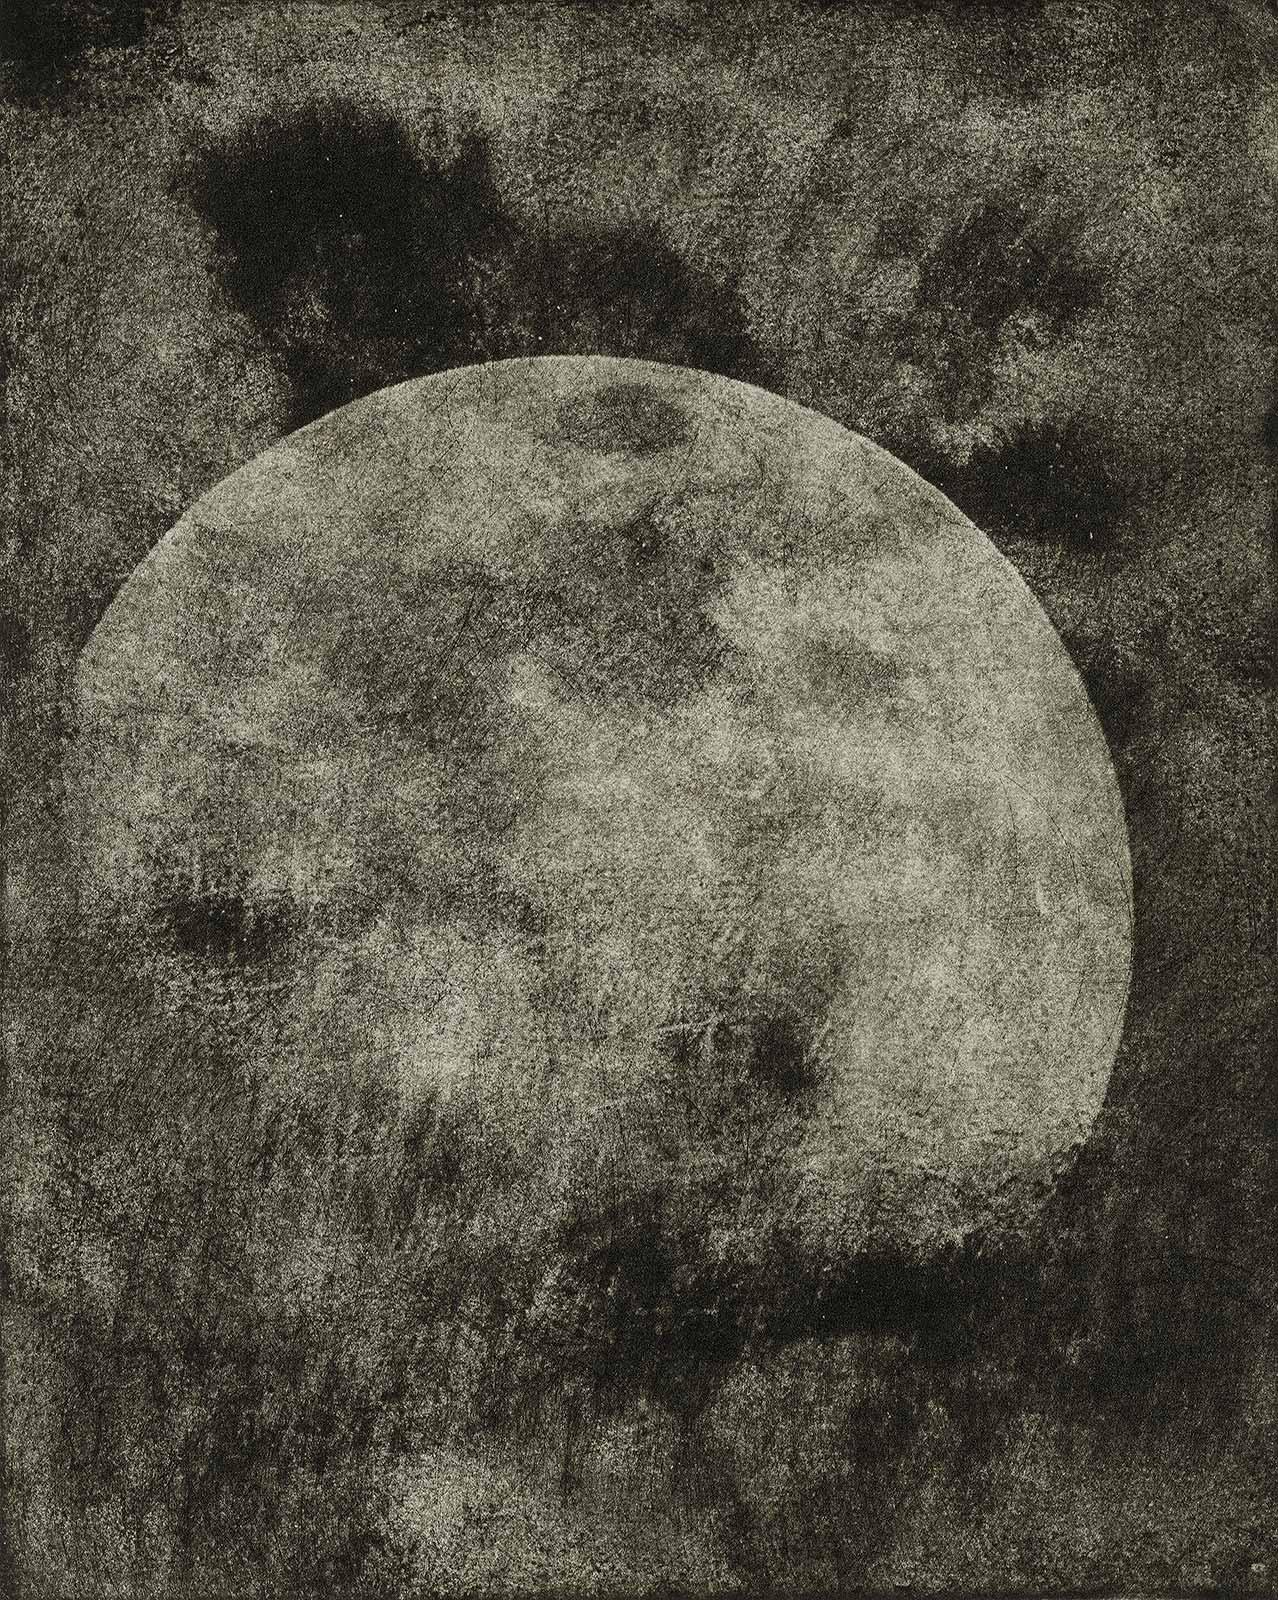 Ted Kincaid Landscape Photograph – Moon ( aus der Lunar-Serie des Künstlers)